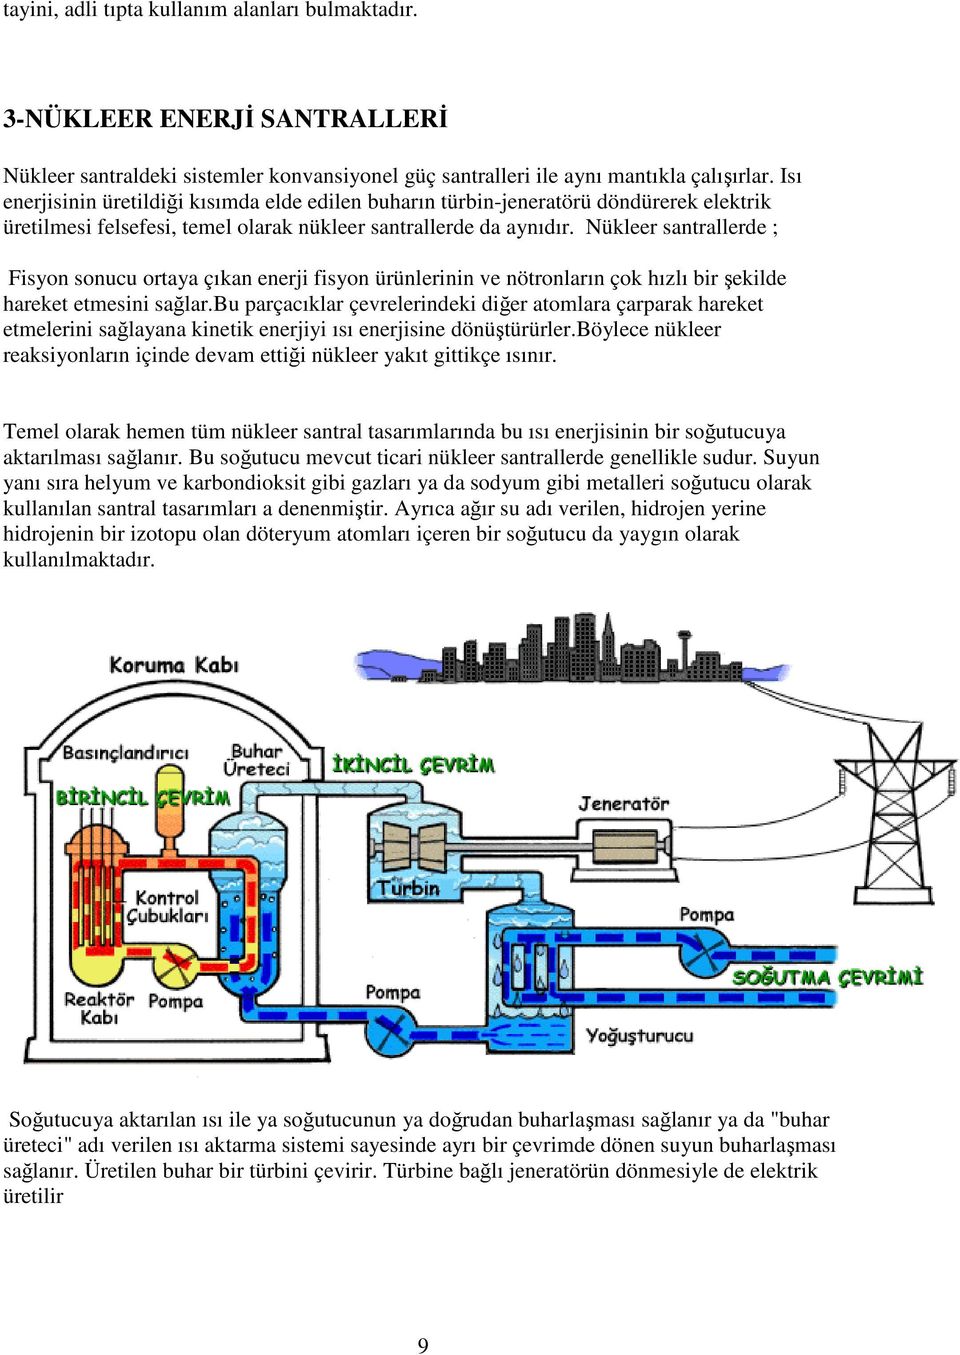 Nükleer santrallerde ; Fisyon sonucu ortaya çıkan enerji fisyon ürünlerinin ve nötronların çok hızlı bir şekilde hareket etmesini sağlar.